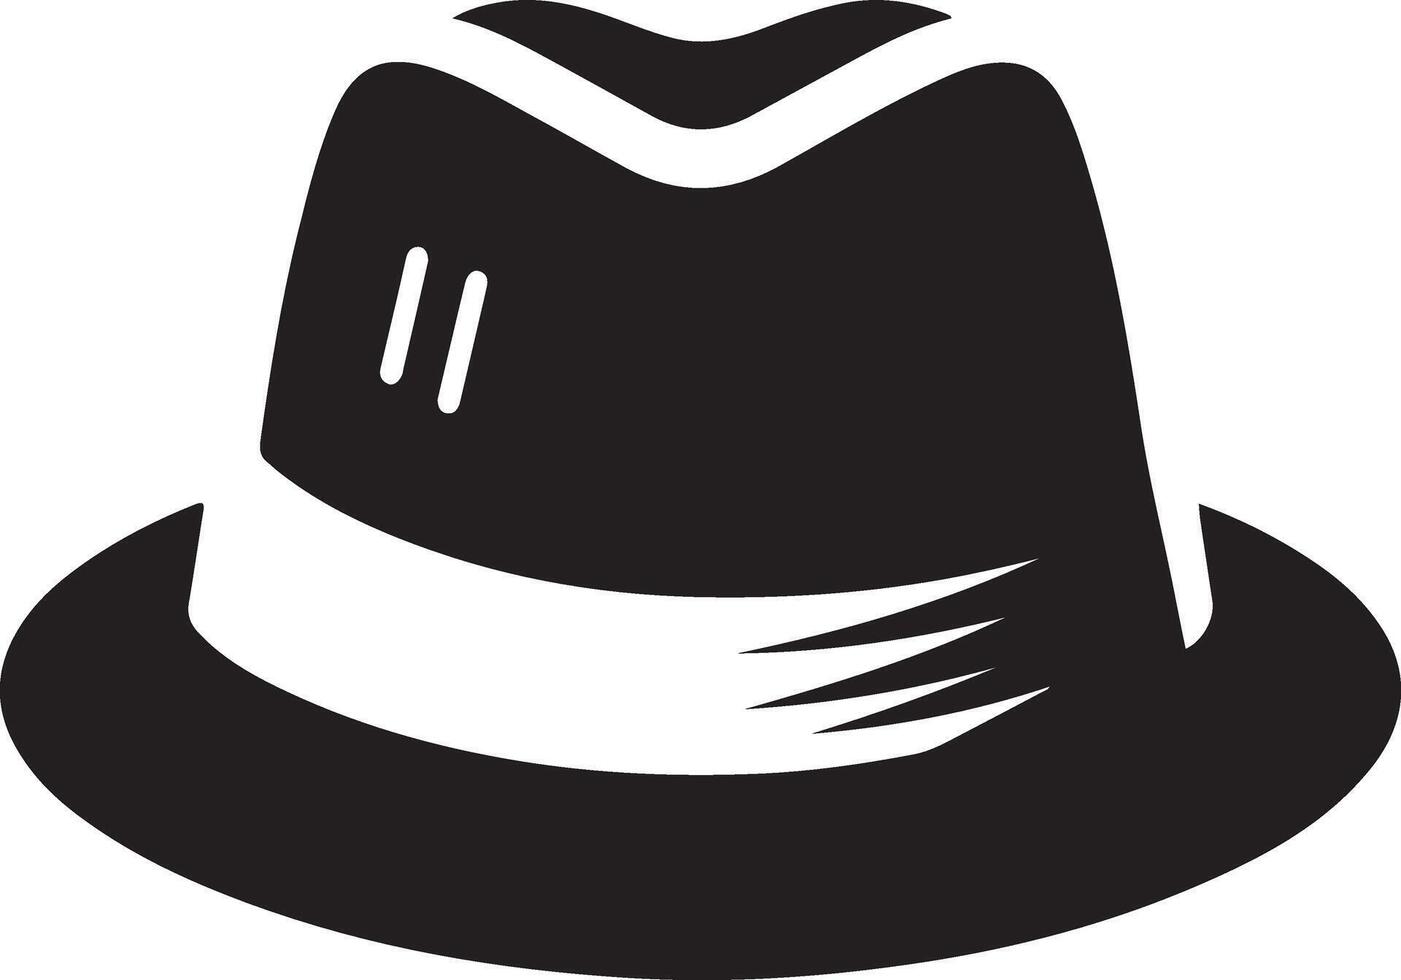 minimal Retro Hat icon, clipart, symbol, black color silhouette 39 vector